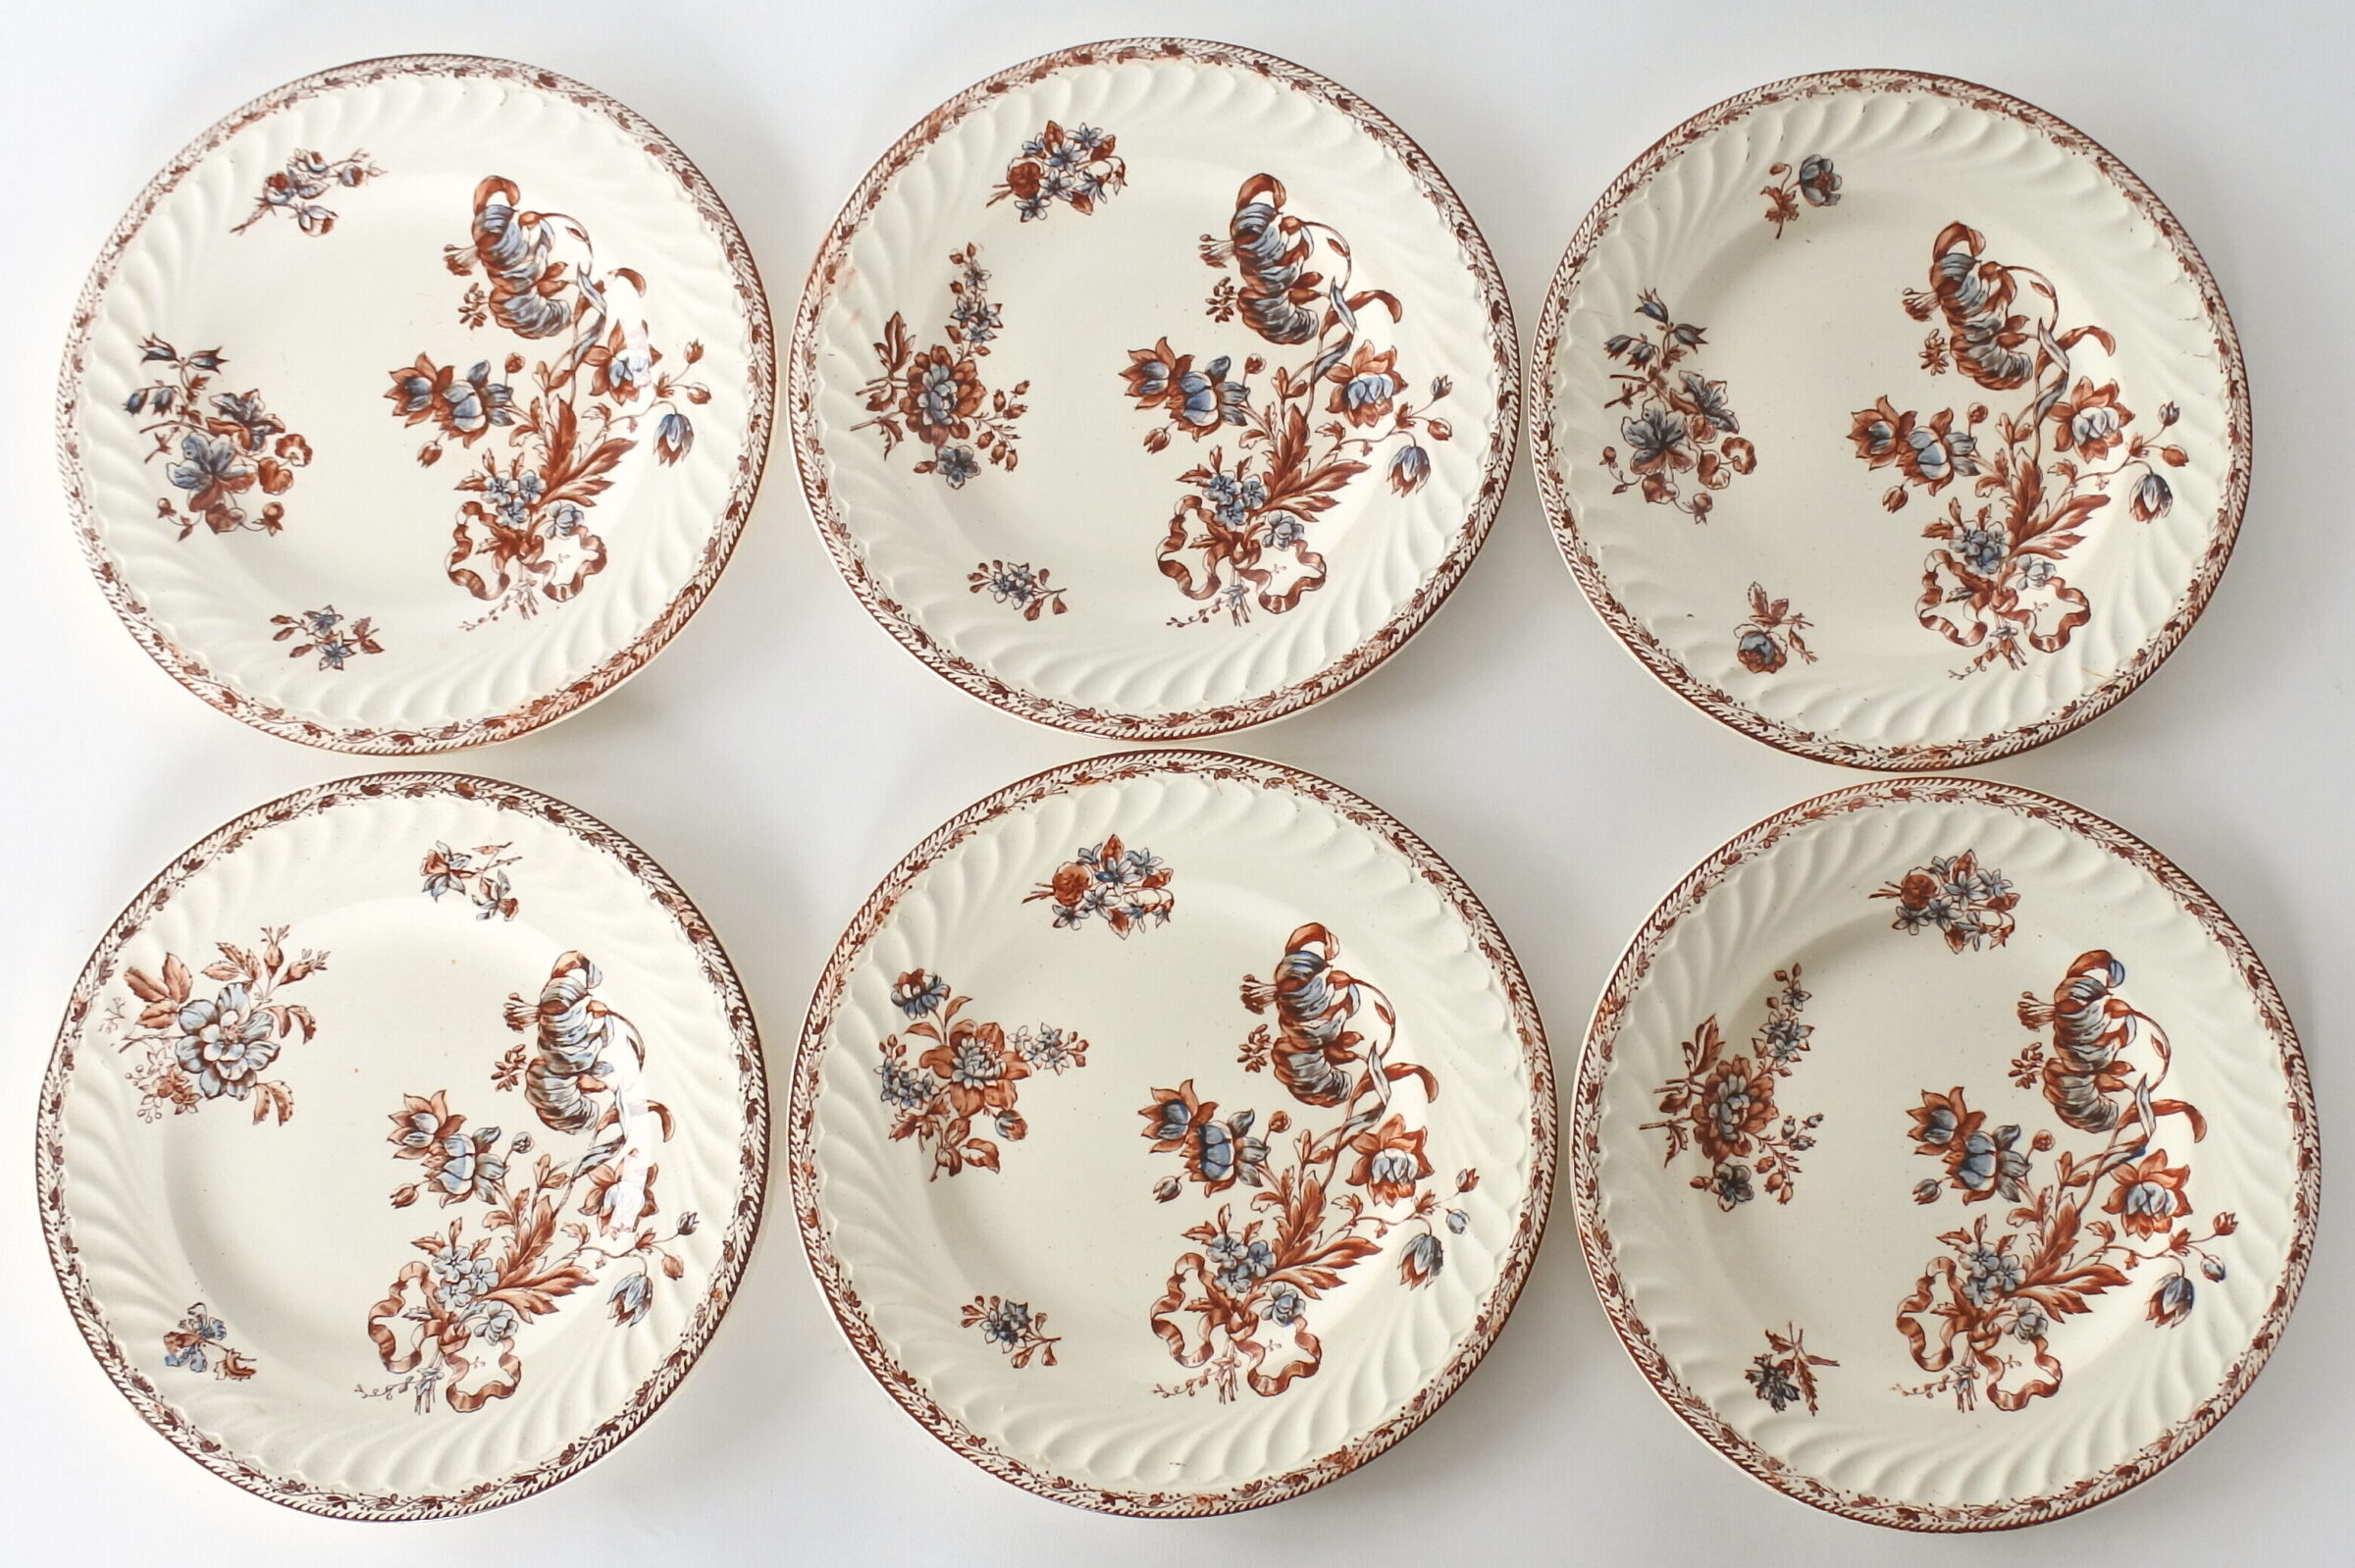 6 piatti da frutta in ceramica di Salins con decoro floreale su fondo avorio